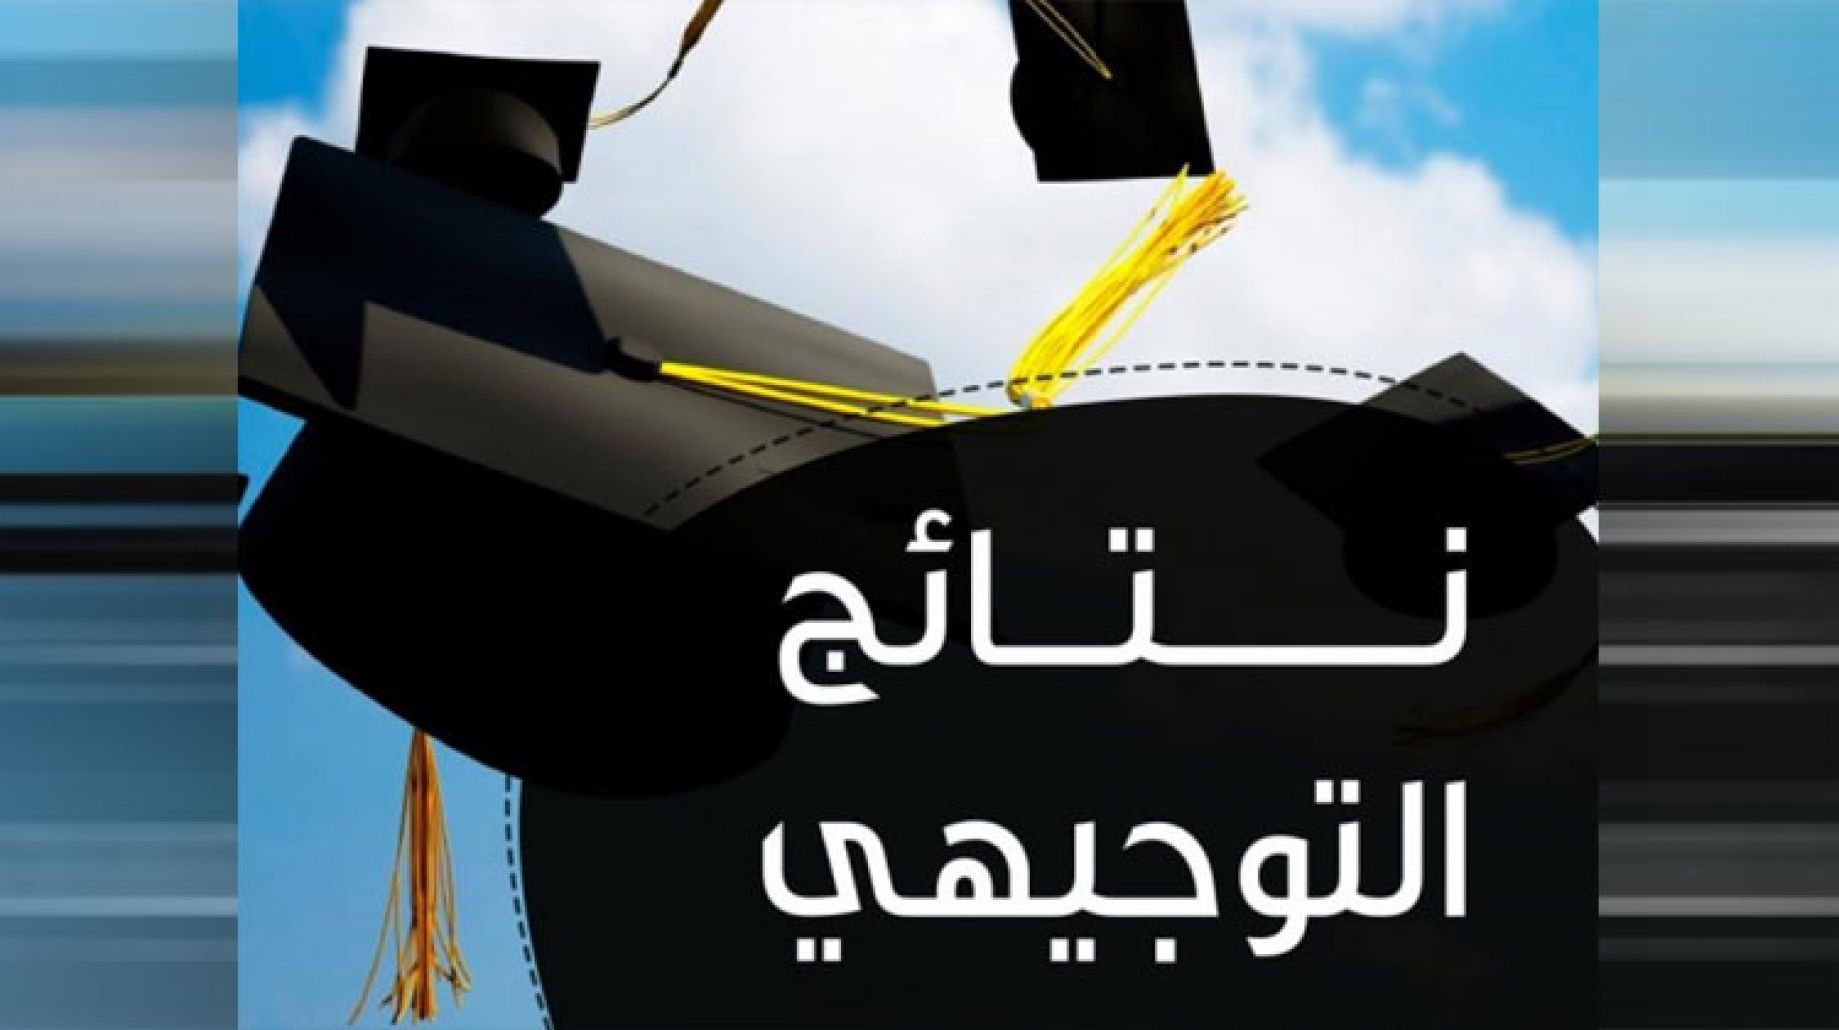 tawjihi.jo نتائج التوجيهي التكميلي 2021 حسب الاسم الأردن نتائج الثانوية العامة ” توجيهي جو” وزارة التعليم الأردنية